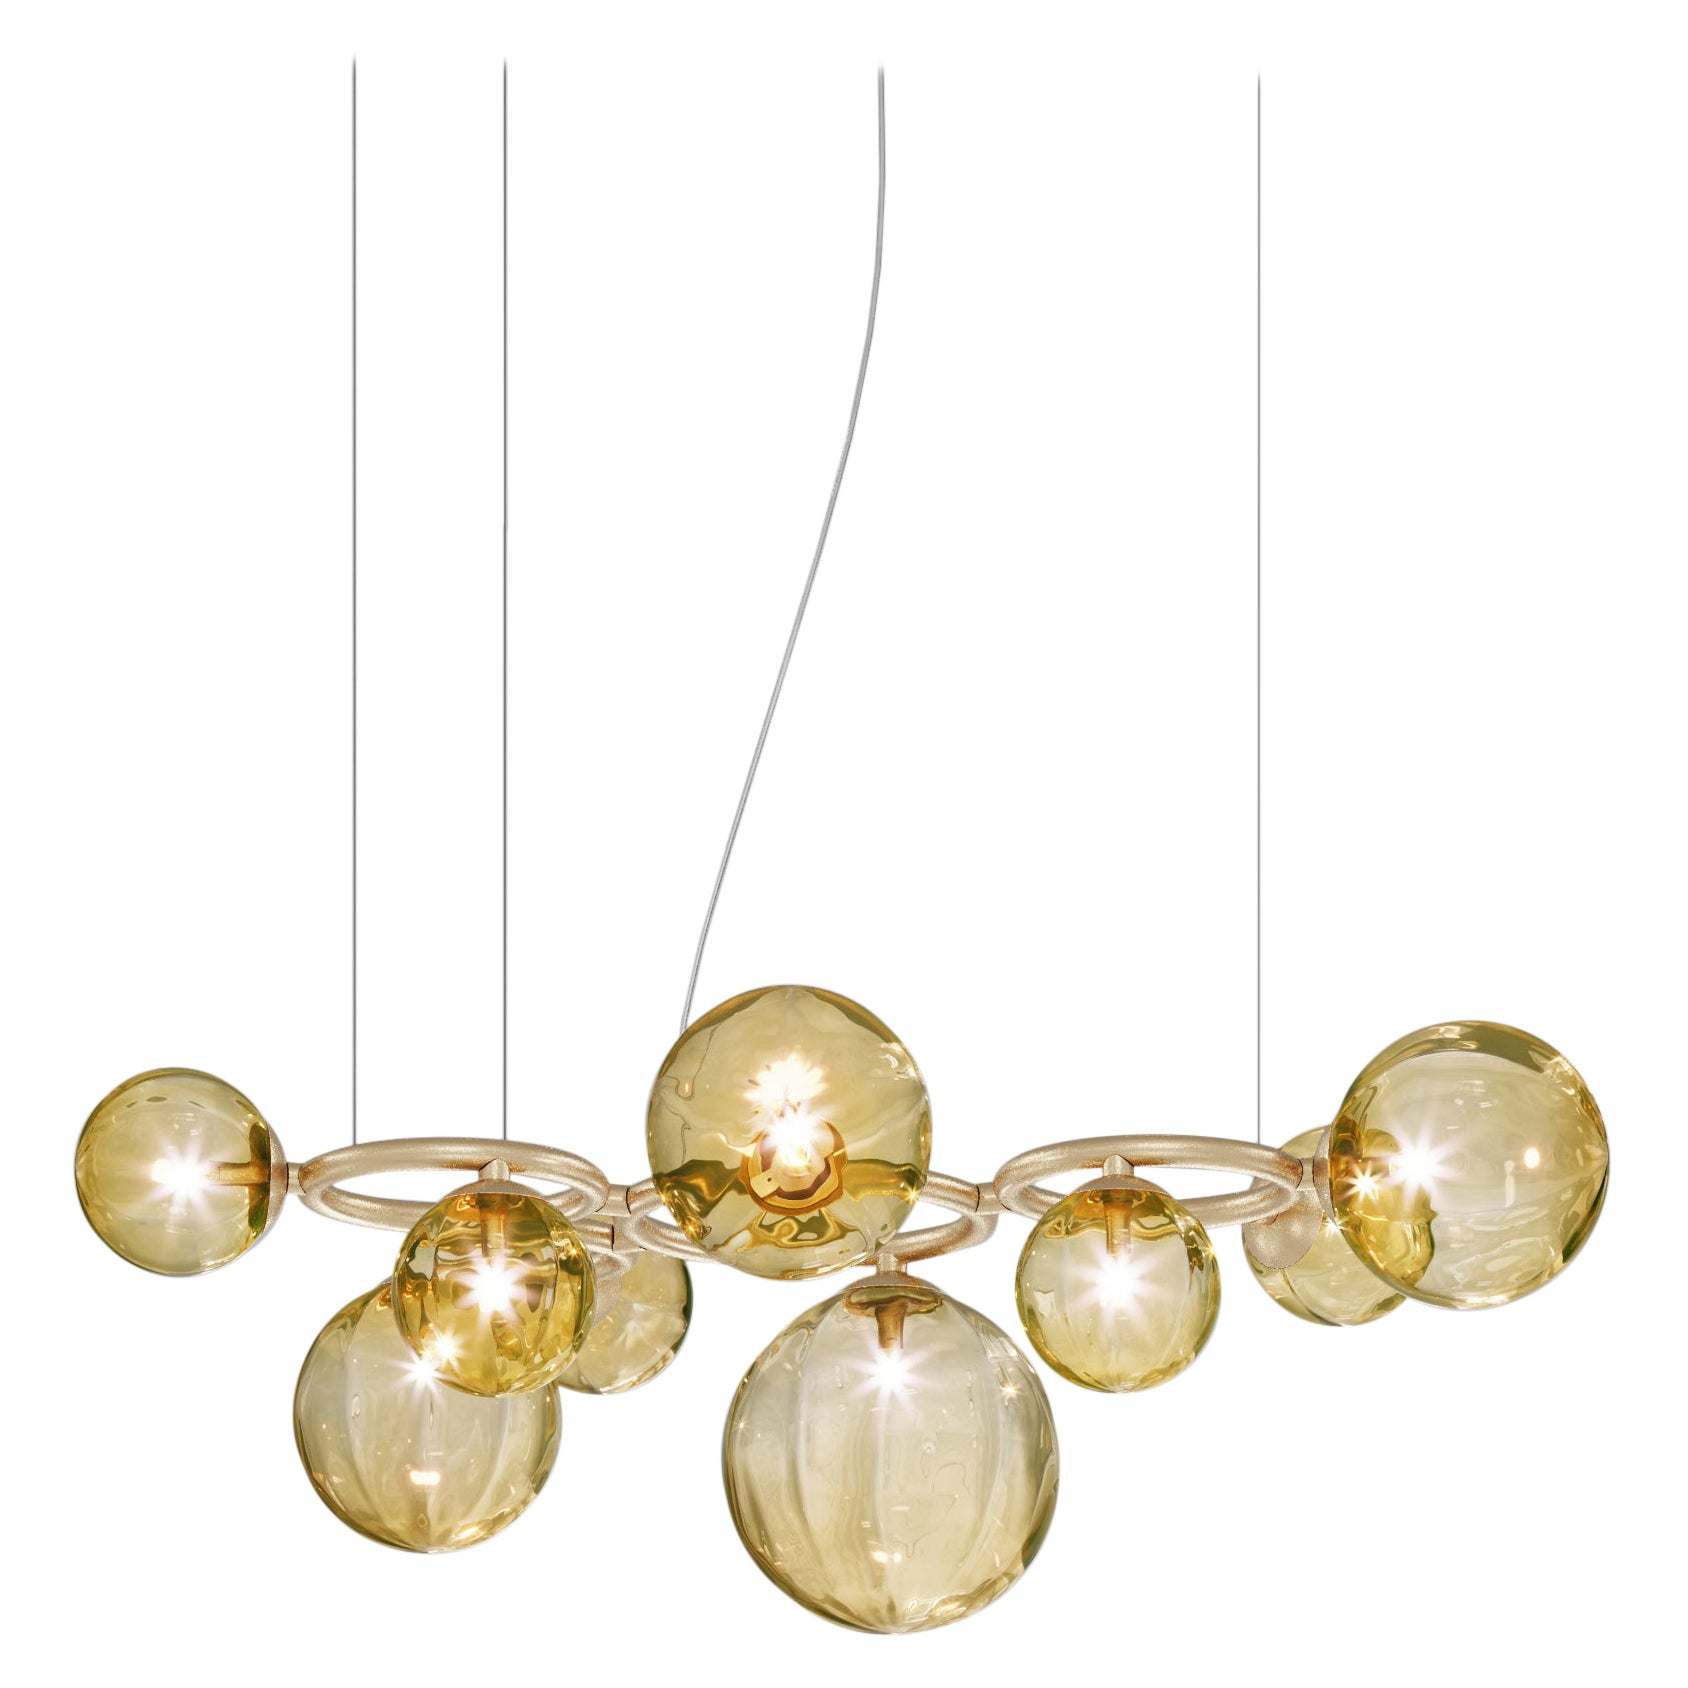 Vistosi-Pendelleuchte aus bernsteinfarbenem, transparentem Glas und mattem Goldrahmen